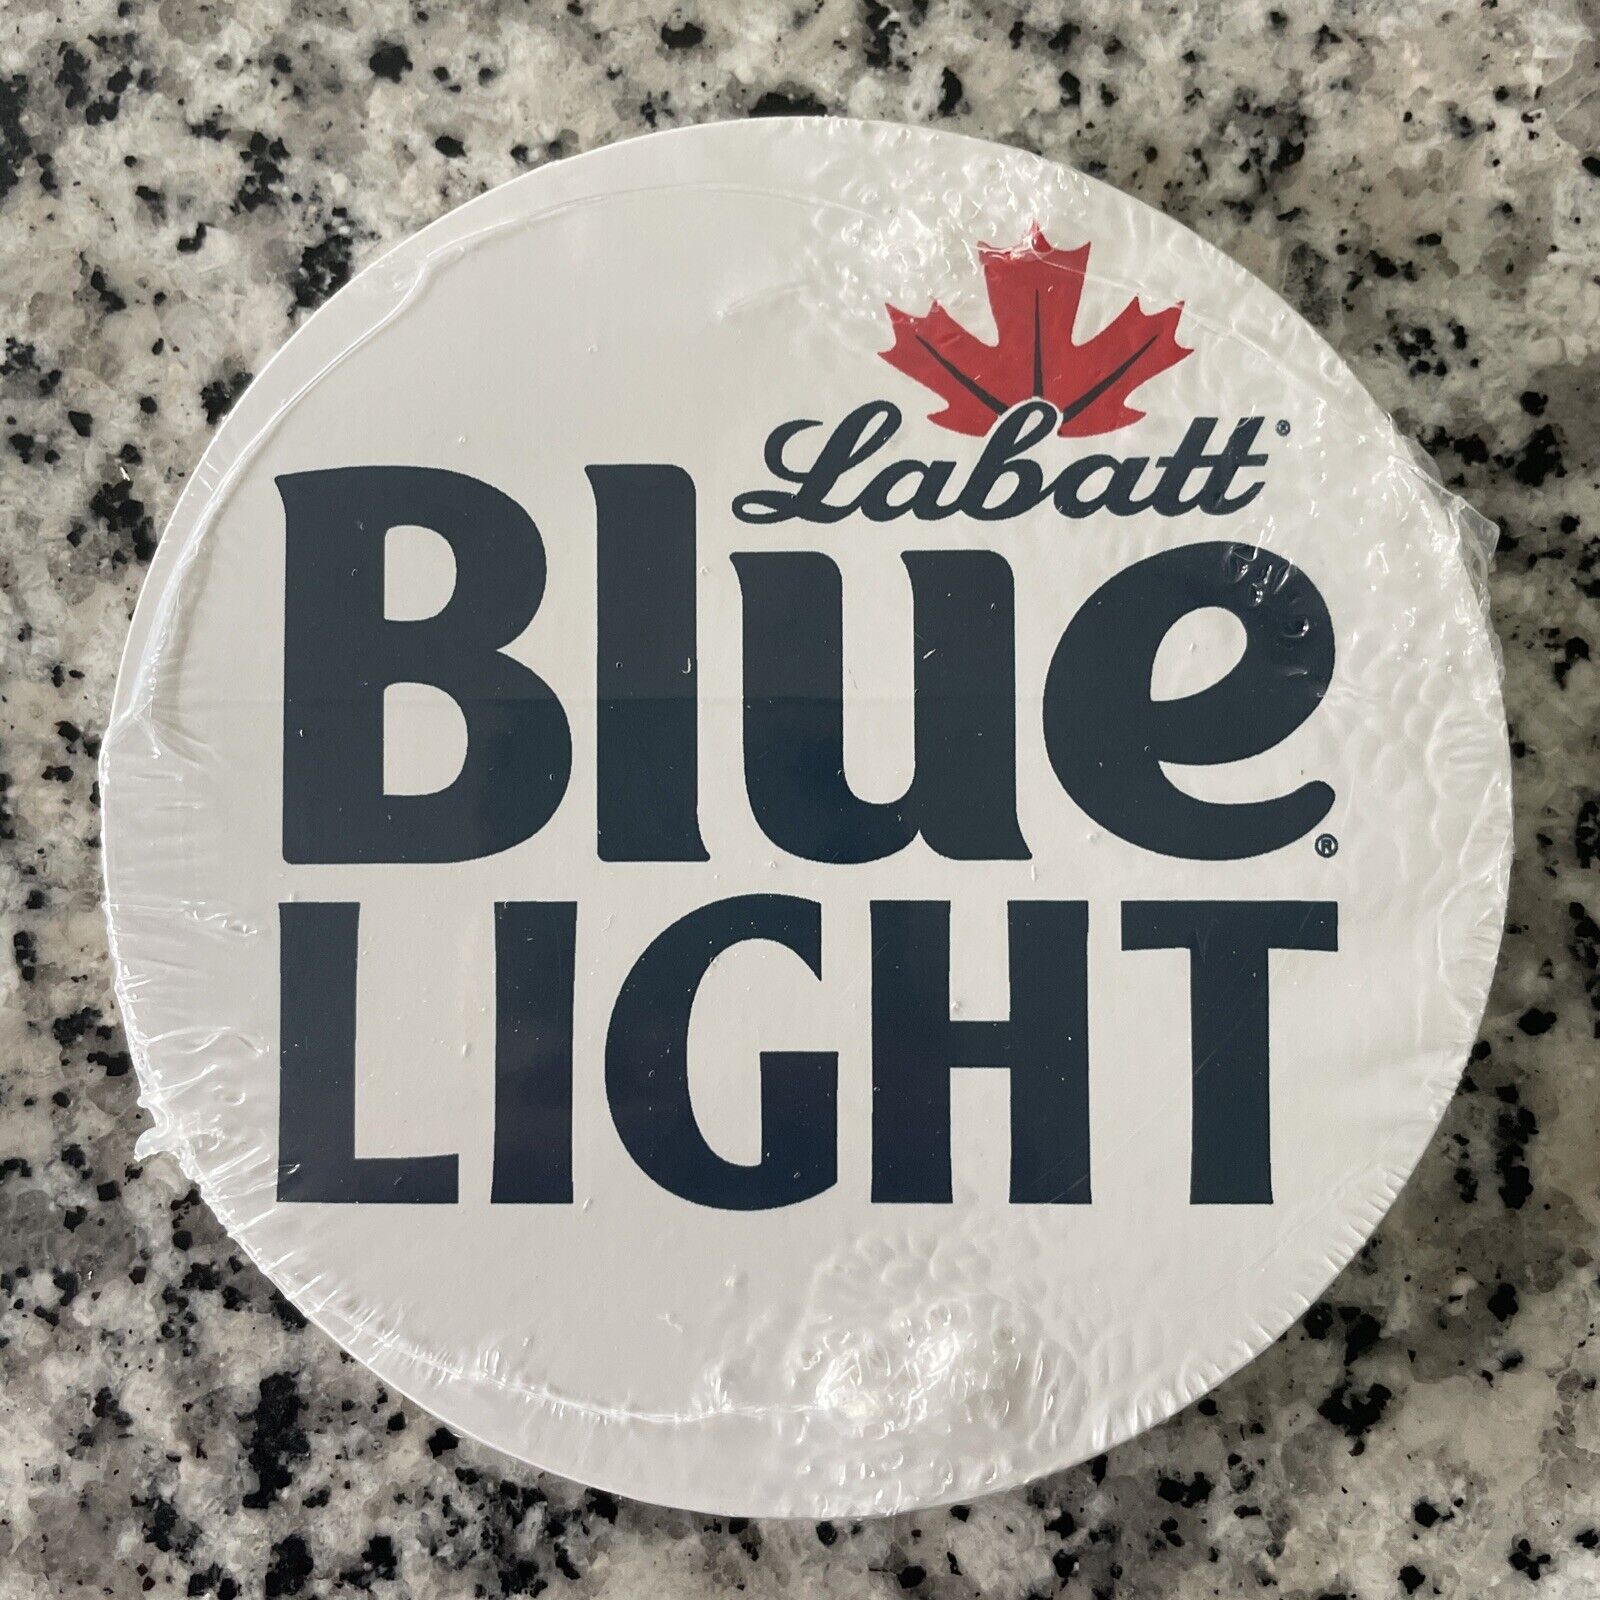 LABATT BLUE LIGHT 4” Round Sticker White craft beer brewery brewing